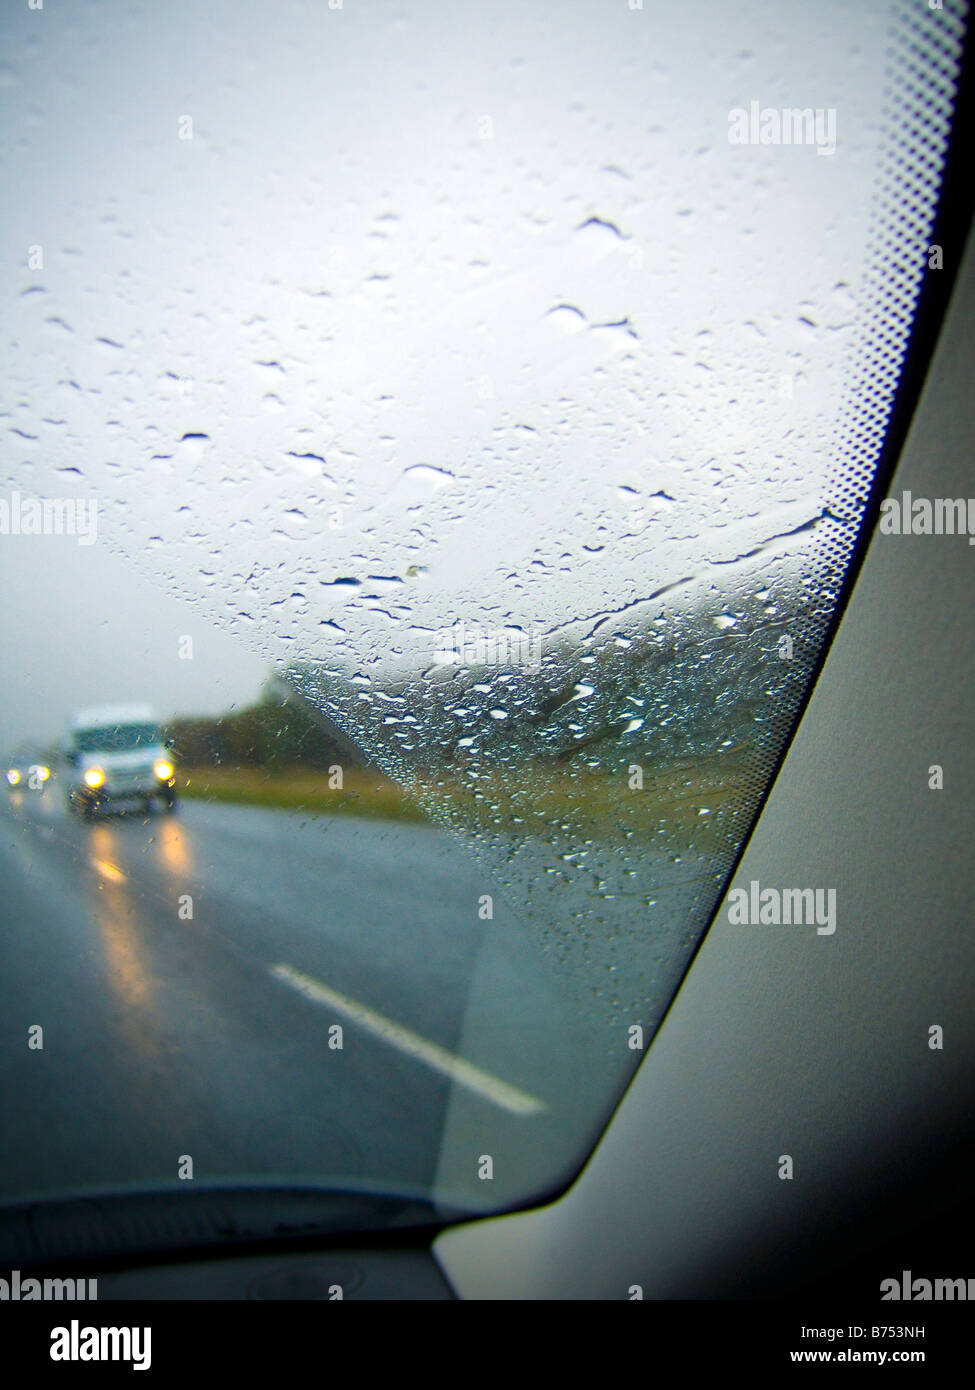 La guida su autostrada, durante tempo piovoso, oncomming veicoli Foto Stock